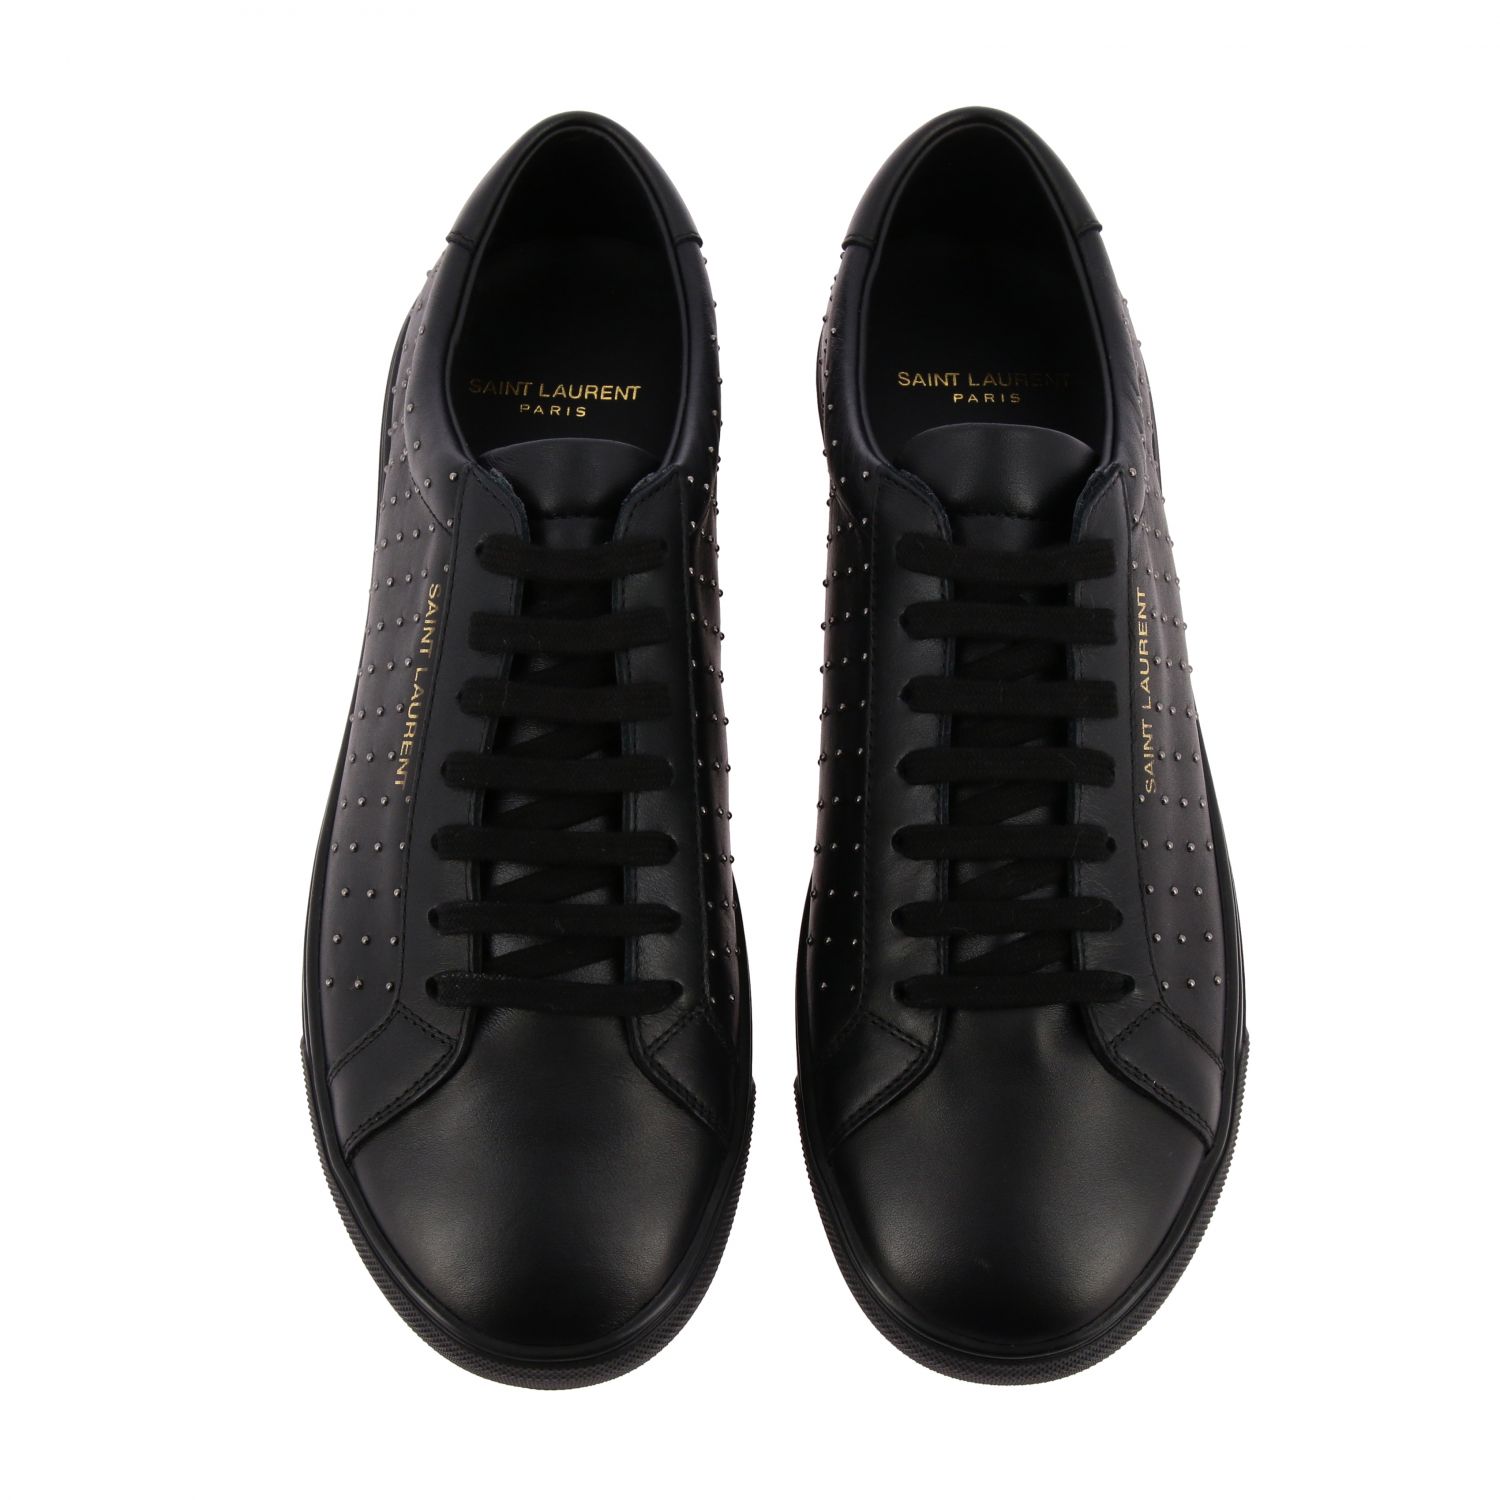 Saint Laurent Outlet: Shoes men | Sneakers Saint Laurent Men Black ...